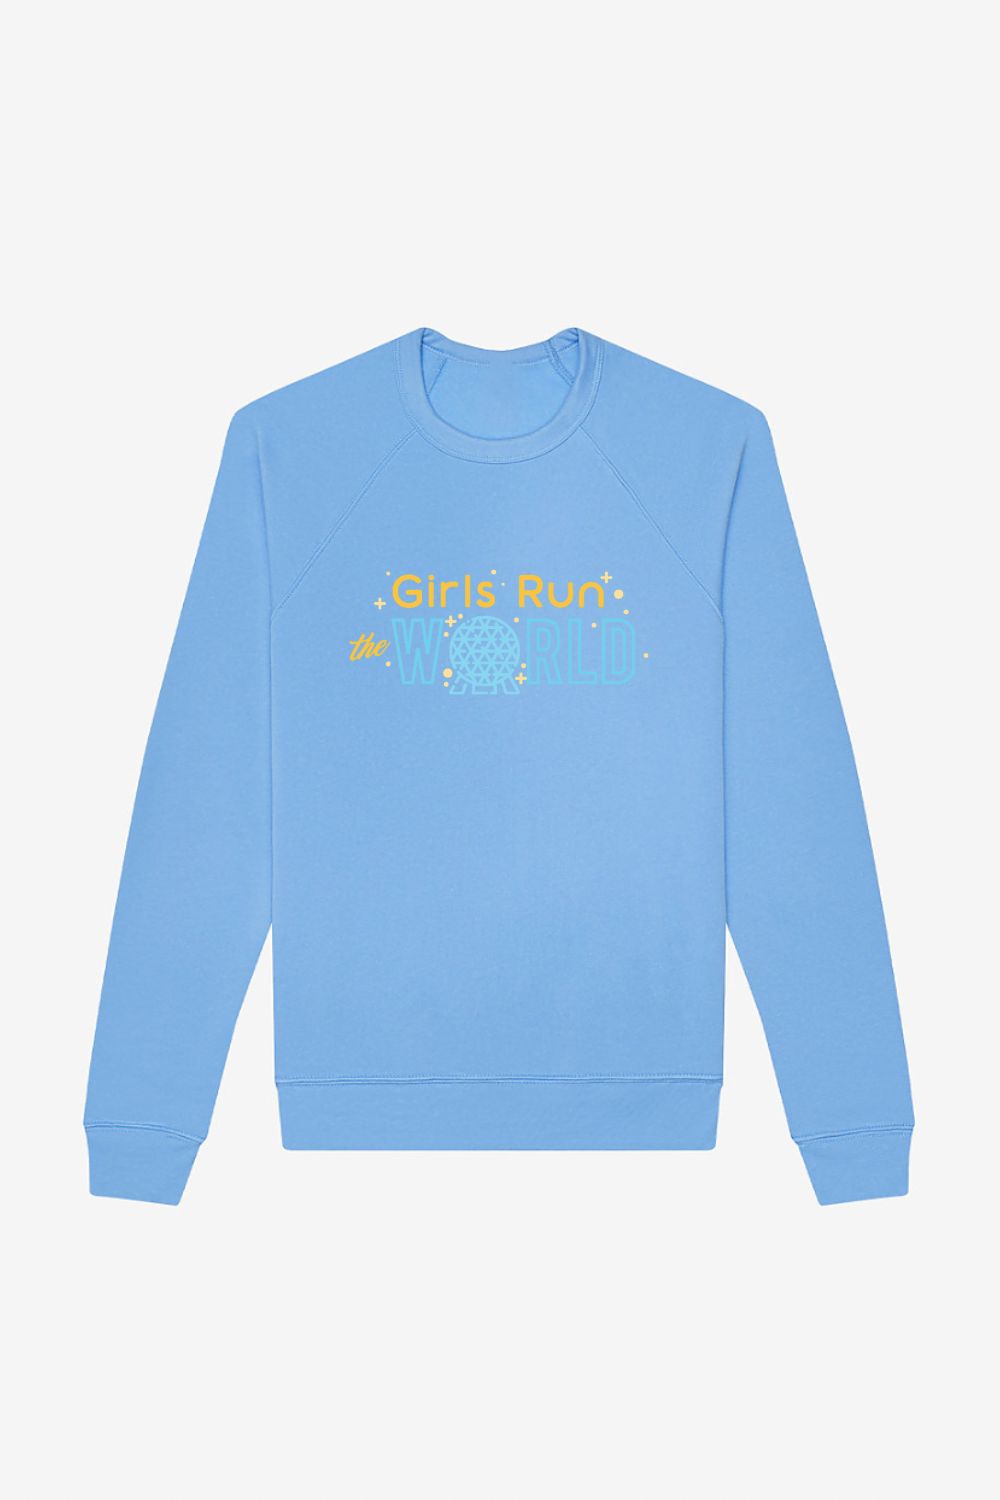 Girls Run The World Disney Epcot Sweatshirt